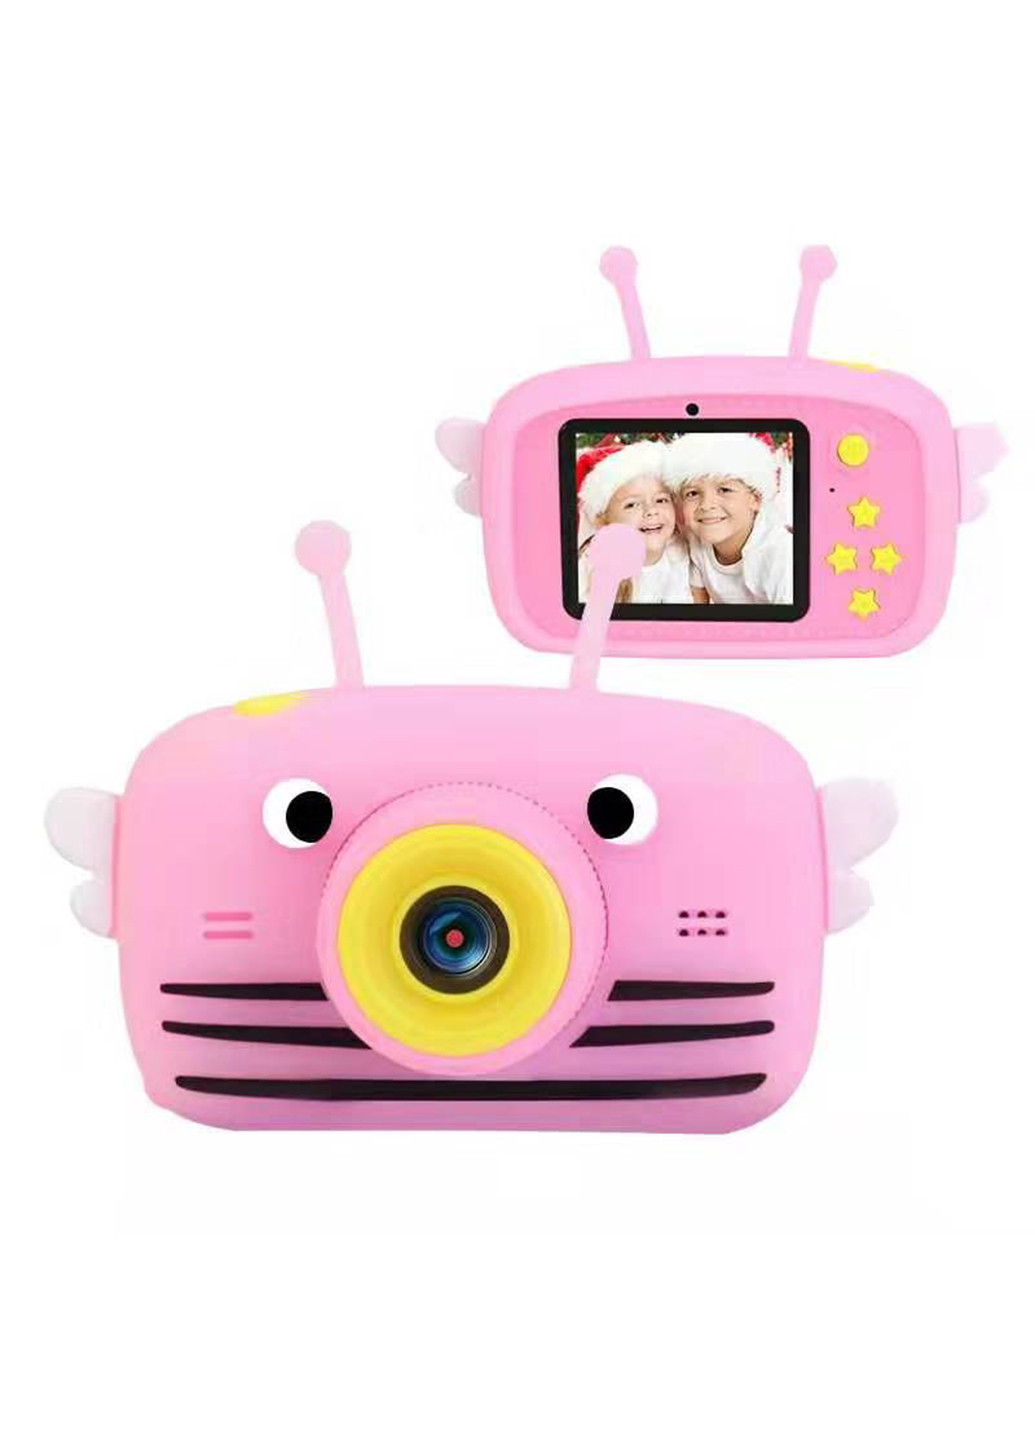 Цифровий дитячий фотоапарат KVR-100 Bee Dual Lens рожевий () XoKo kvr-100-pn (171738974)